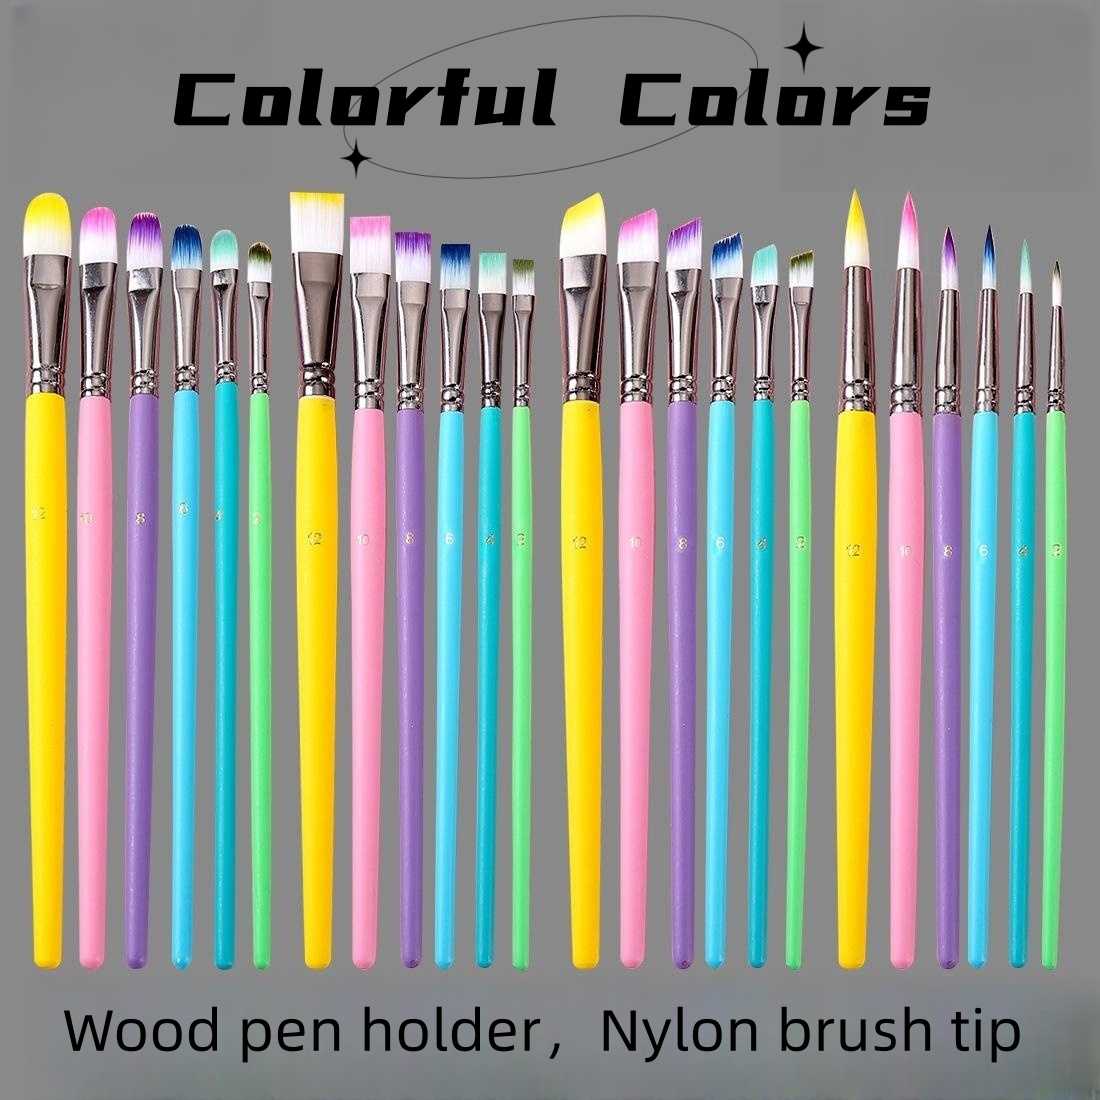 12 X 12ml Tubes Gouache Paint Set, Premium Vibrant Colors Gouache Paint For  Painting Supplies